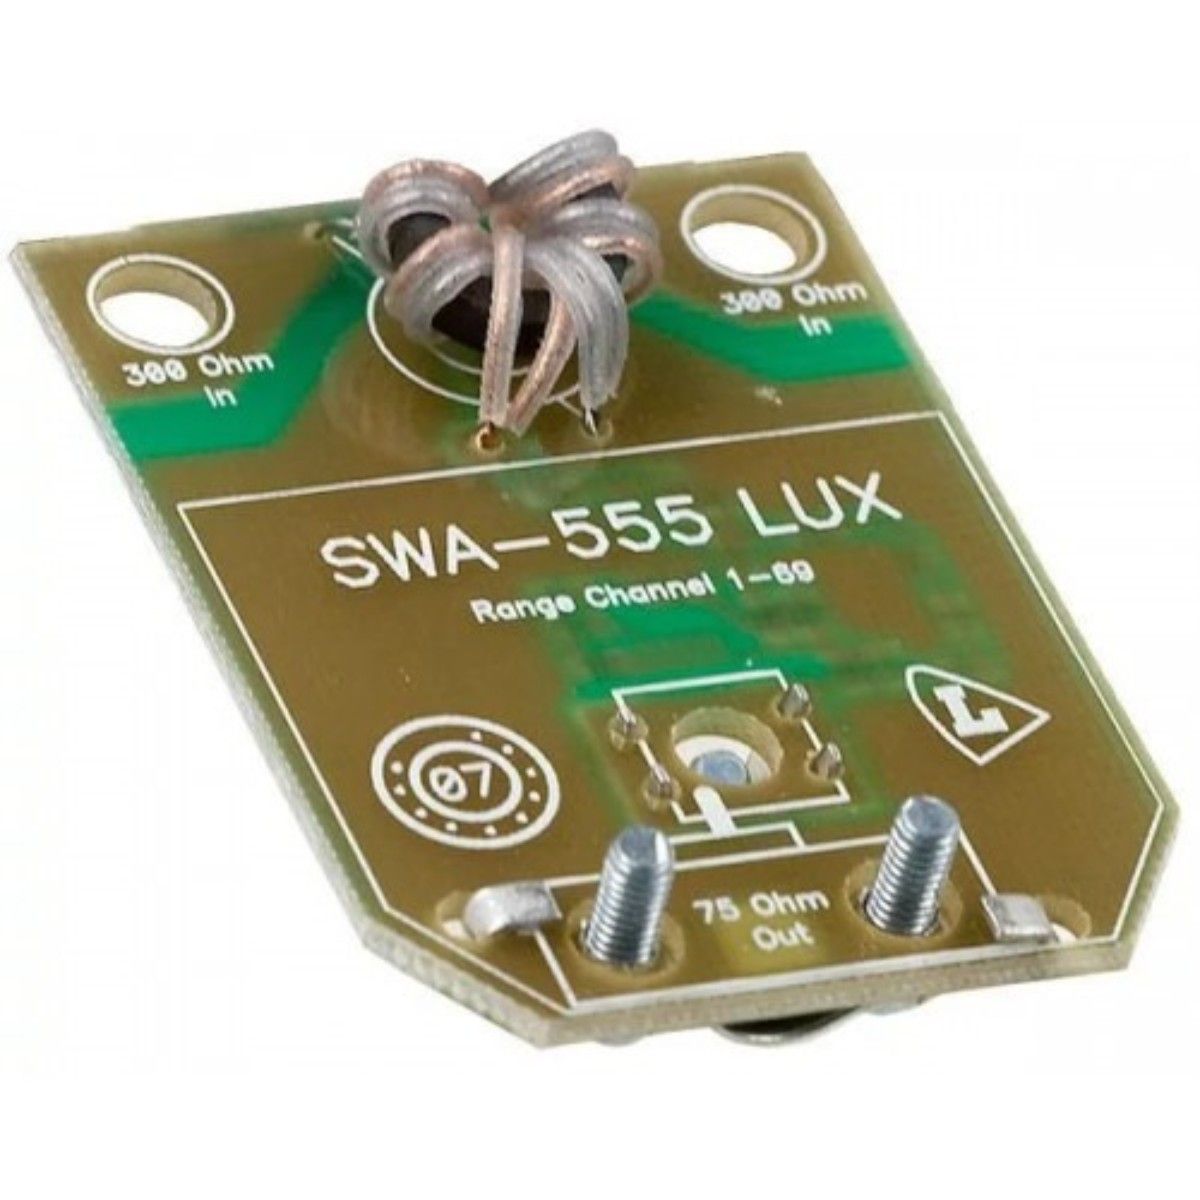 Плата для антенны телевизора. Усилитель антенный SWA-555. Усилитель SWA-777 Lux. Усилитель антенный SWA-555 Lux. Усилитель для цифрового антенна SWA 555 Lux.